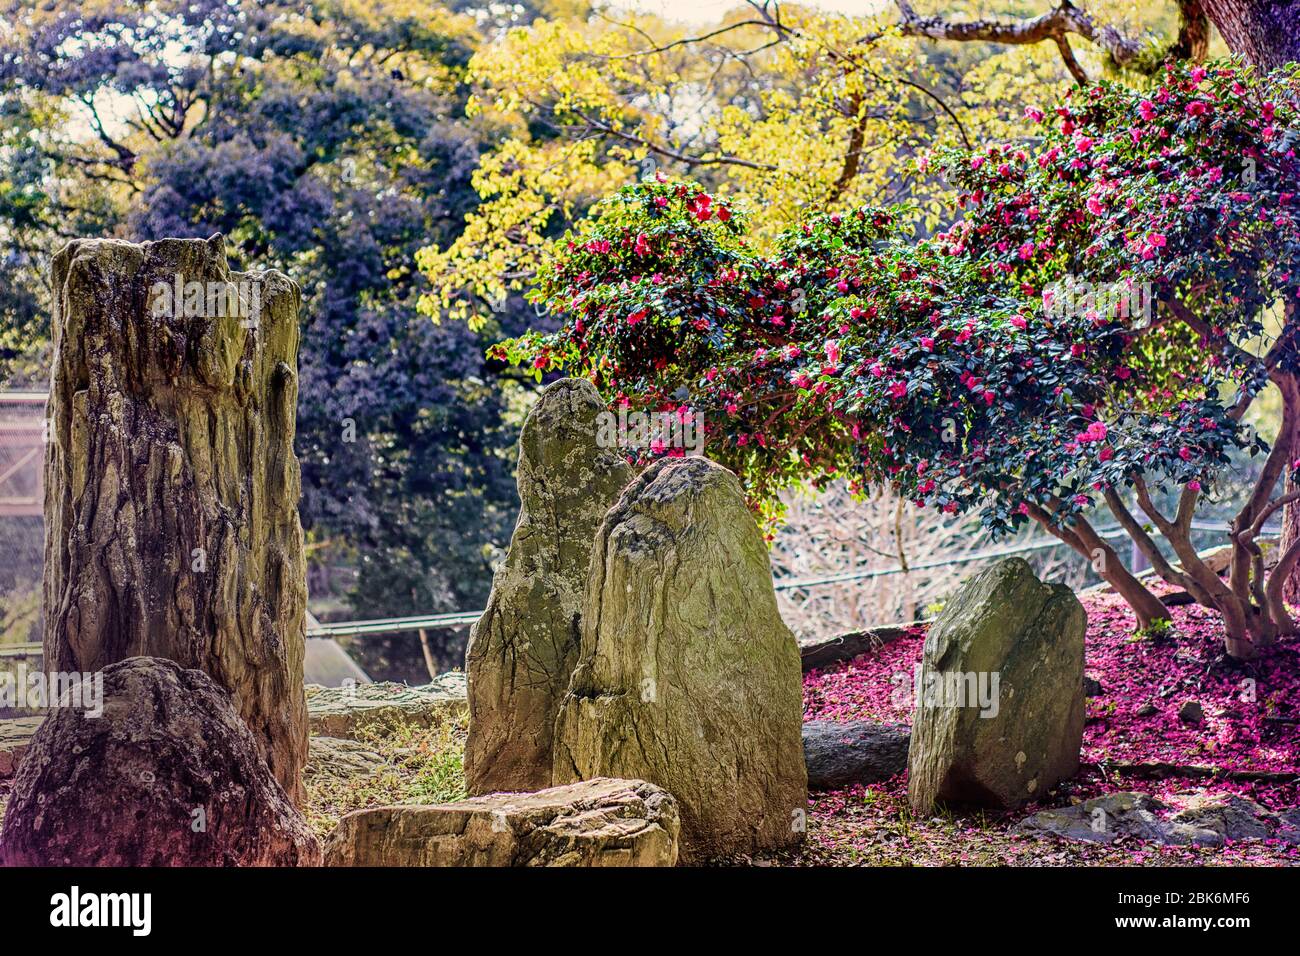 Garden in Wakayama castle, old historic Japanese castle in Wakayama city, Kansai, Japan Stock Photo